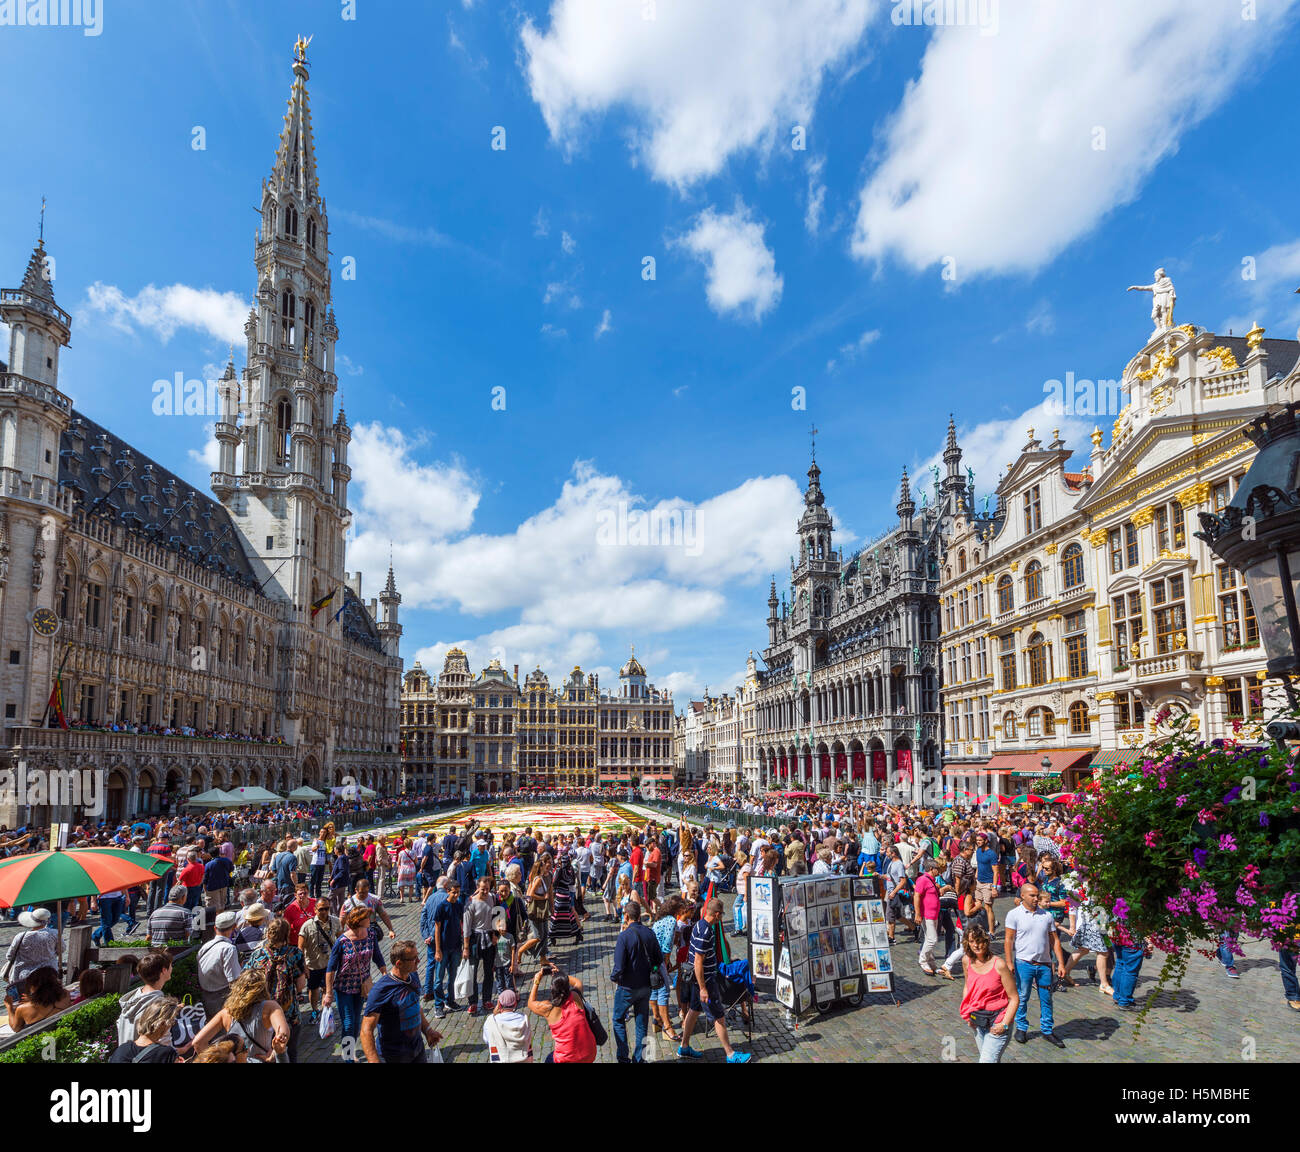 2016 Le tapis de fleurs de la Grand Place (Grote Markt) avec l'Hôtel de Ville à gauche, Bruxelles, Belgique. Banque D'Images